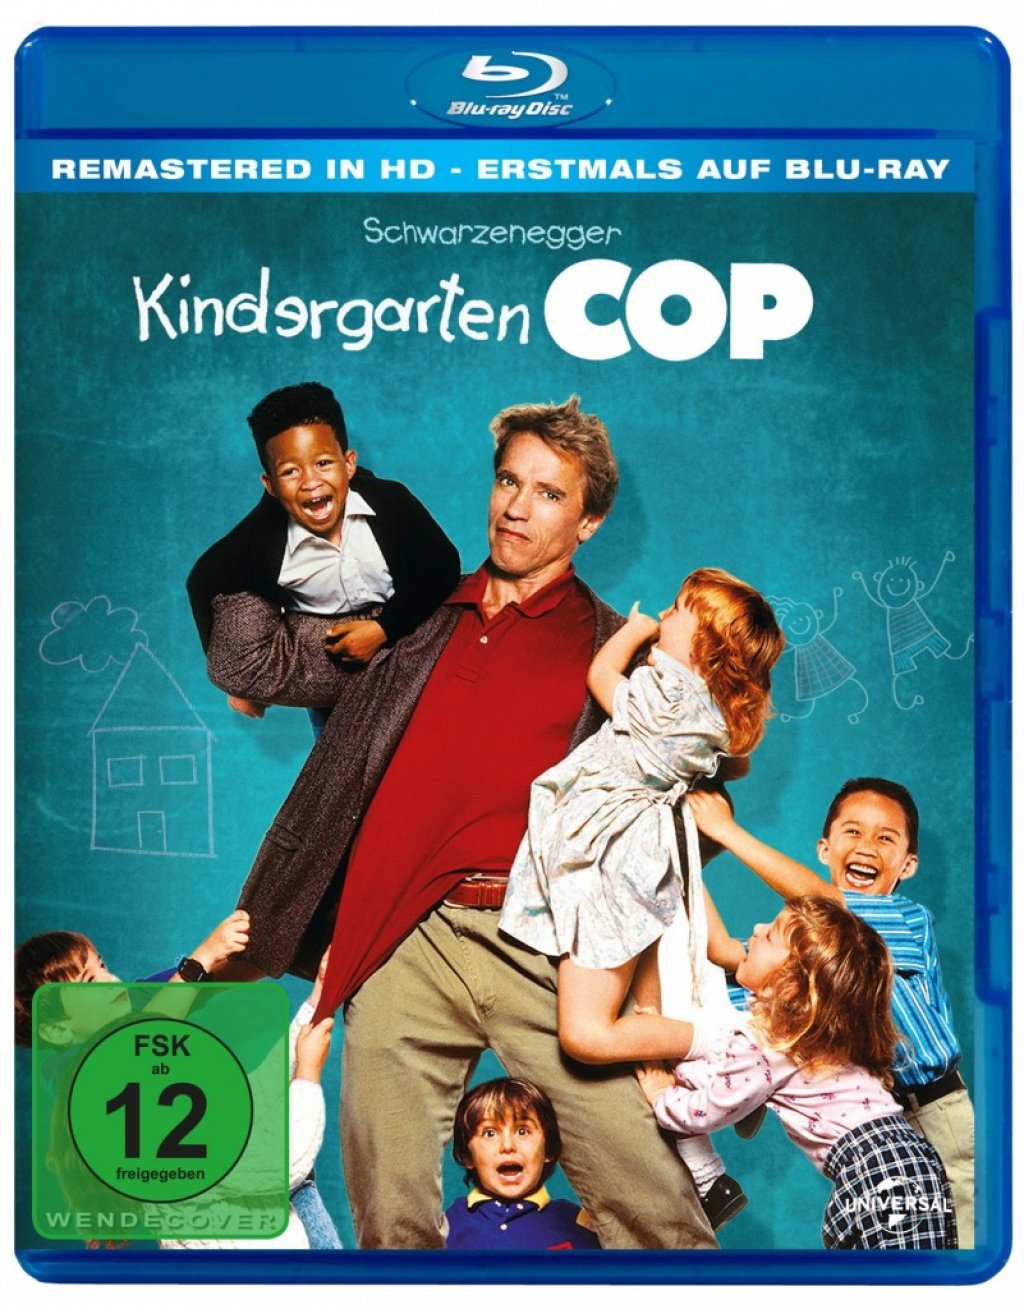 kindergarten cop 2 blu ray image